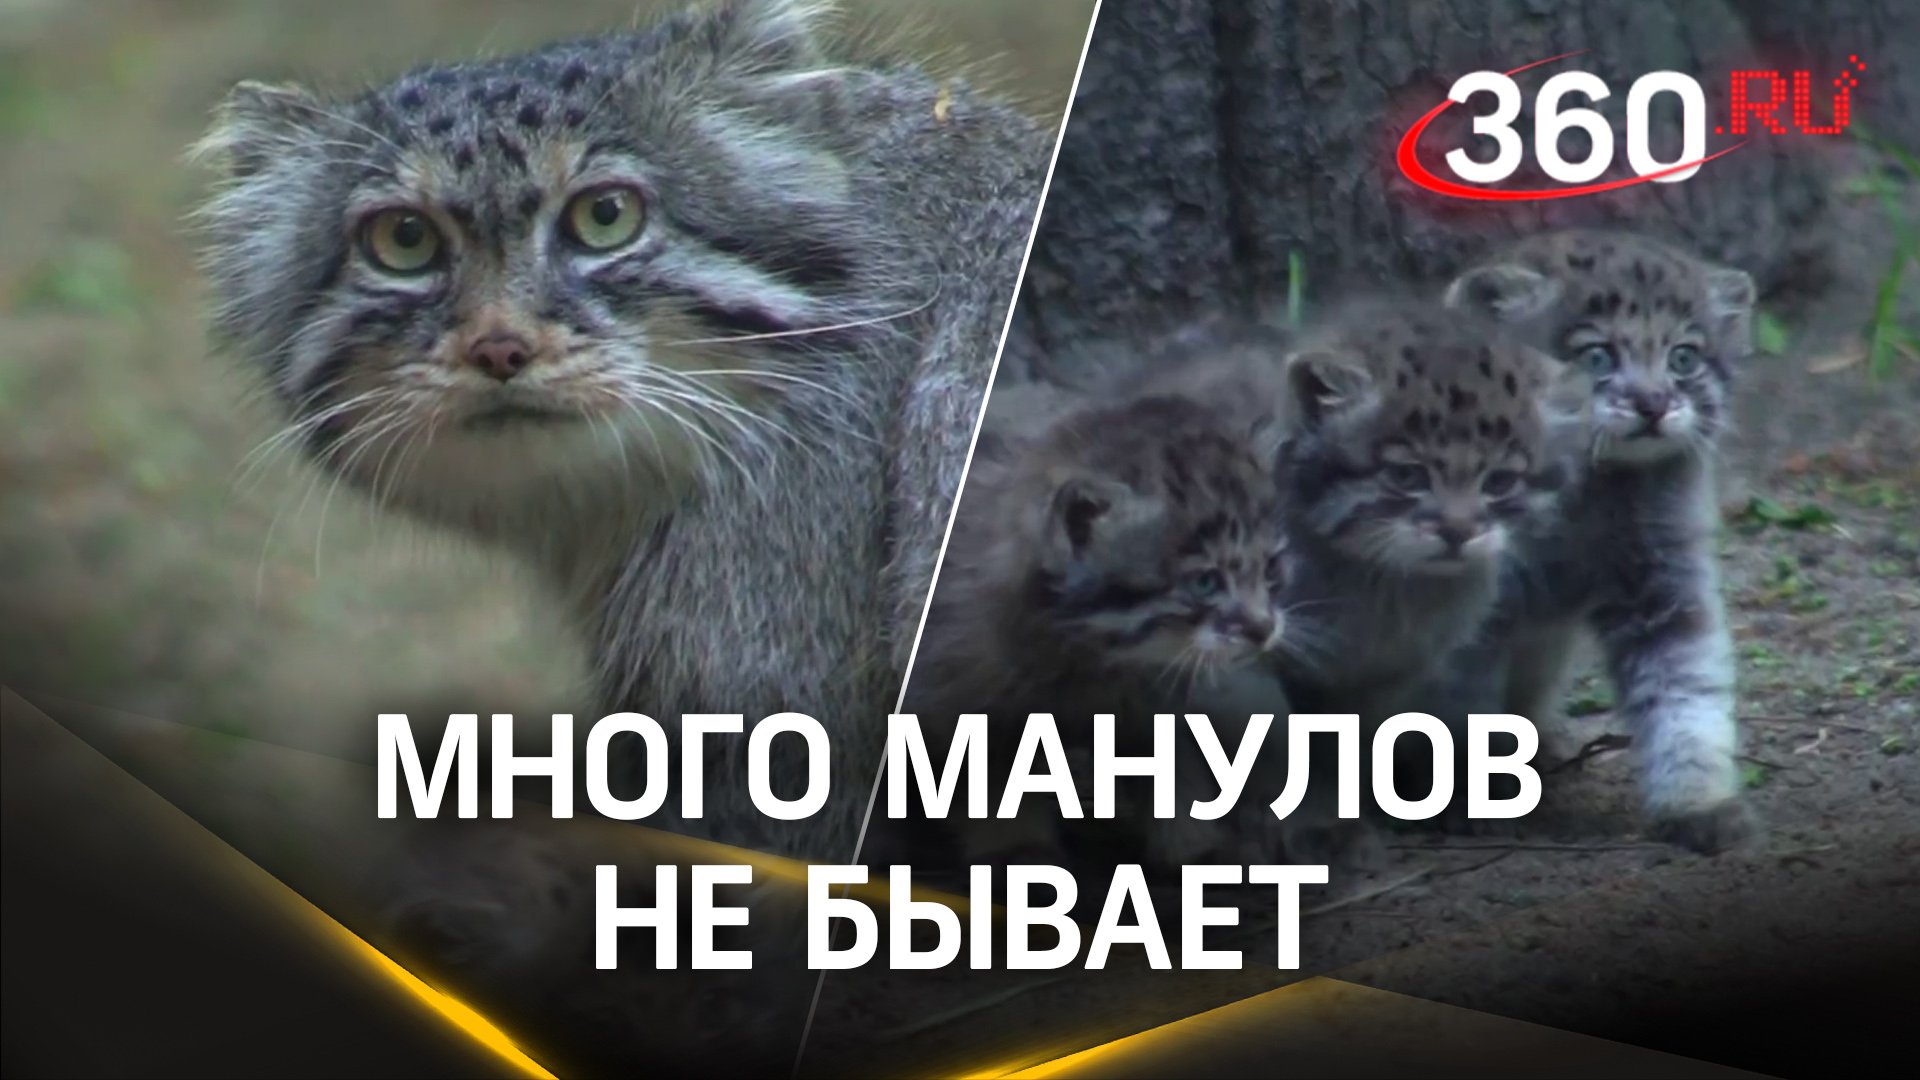 Берегите свои мимиметры: в зоопарке Новосибирска пополнение, две самки манула привели аж 12 котят!